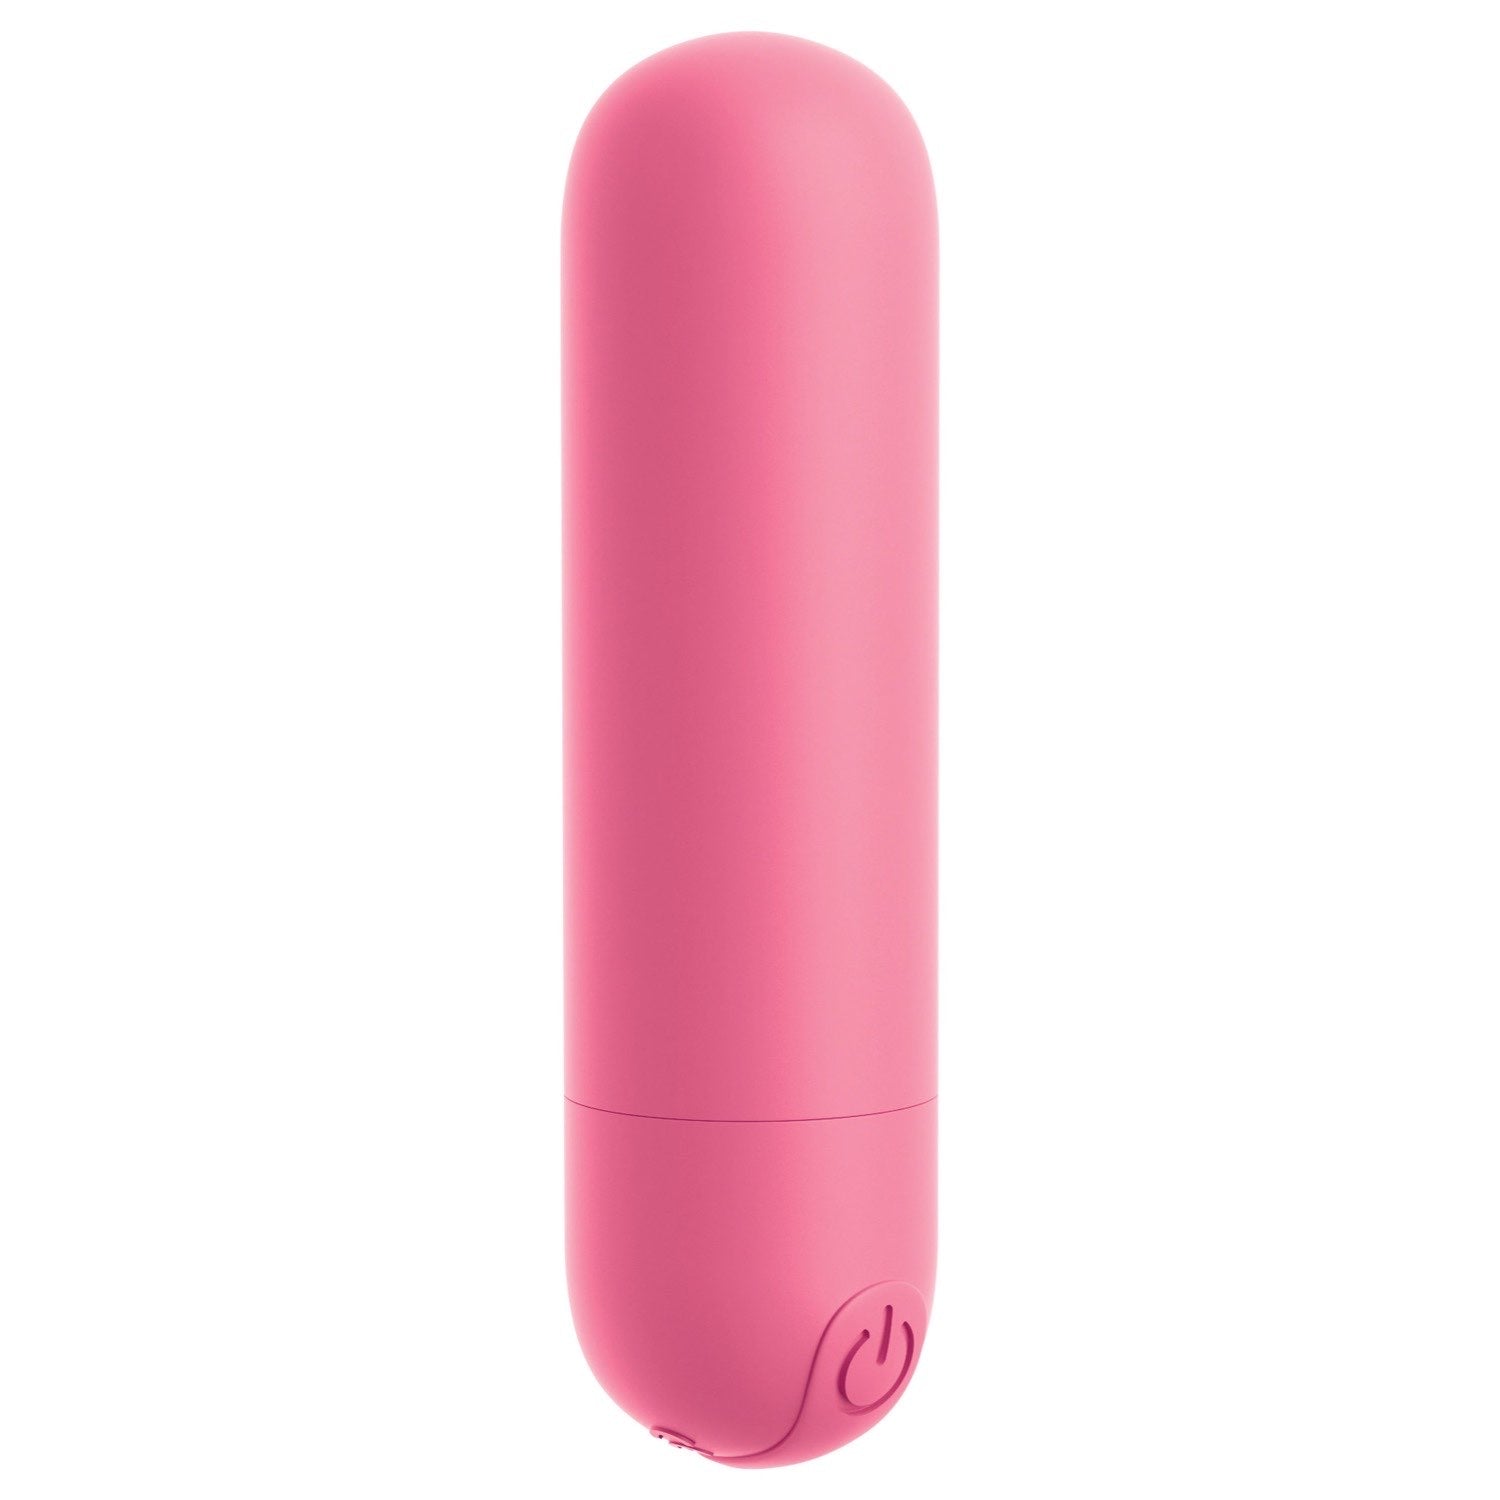 我的天啊！ 我的天啊！ Bullets #Play - 粉色 USB 可充电子弹头 by Pipedream